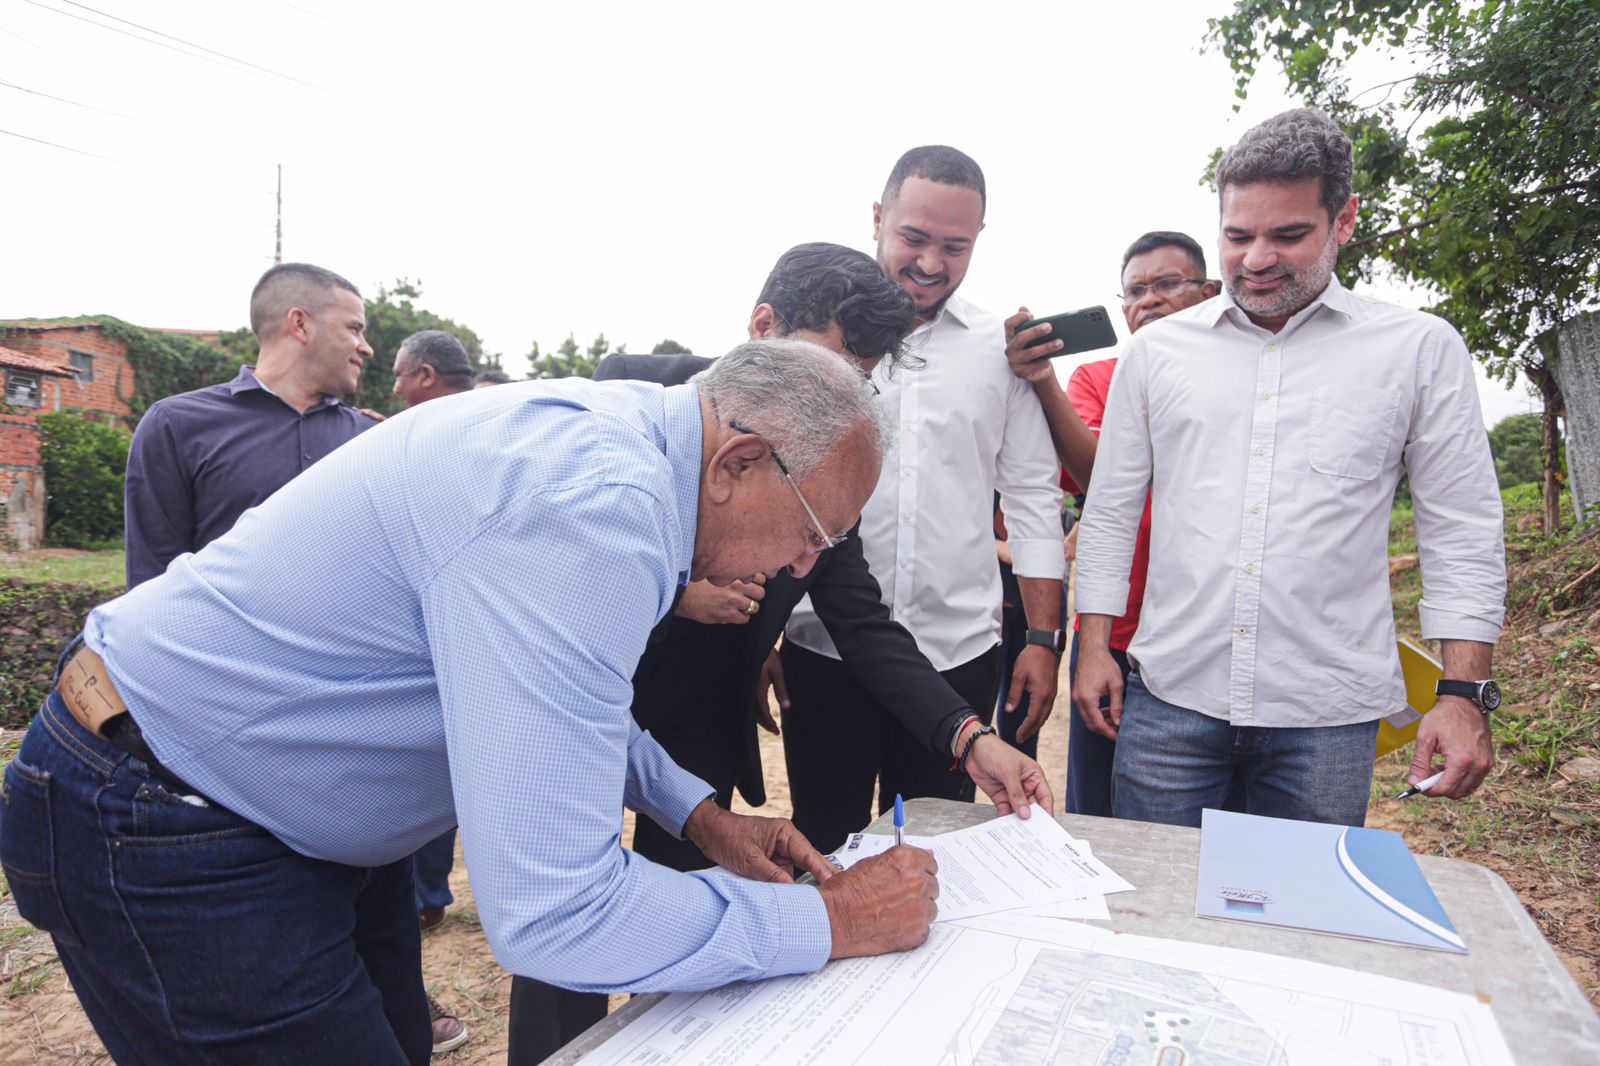 O prefeito Dr. Pessoa assinou a ordem de serviço para a retomada da obra de infraestrutura e urbanização da Vila da Paz. Fotos: Rômulo Piauilino / SEMCOM